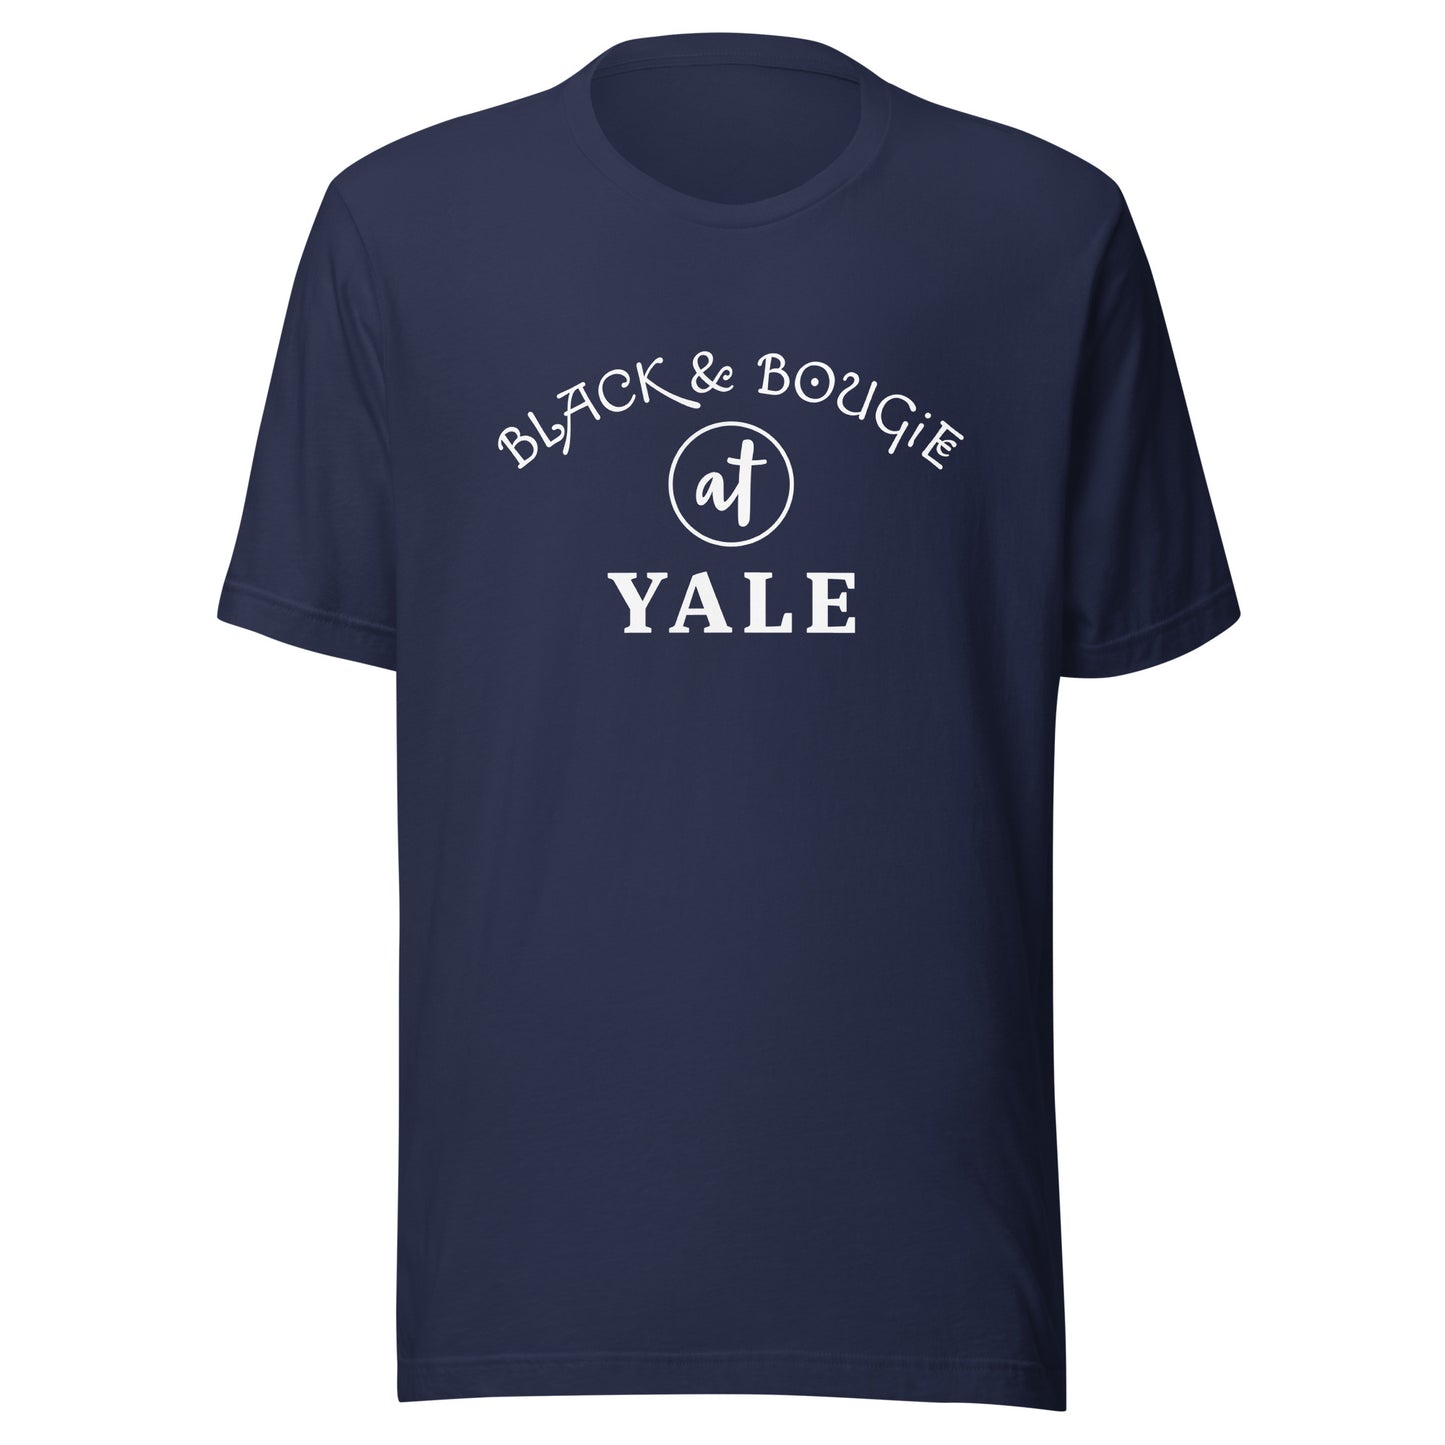 B & B at Yale - Blue T Shirt